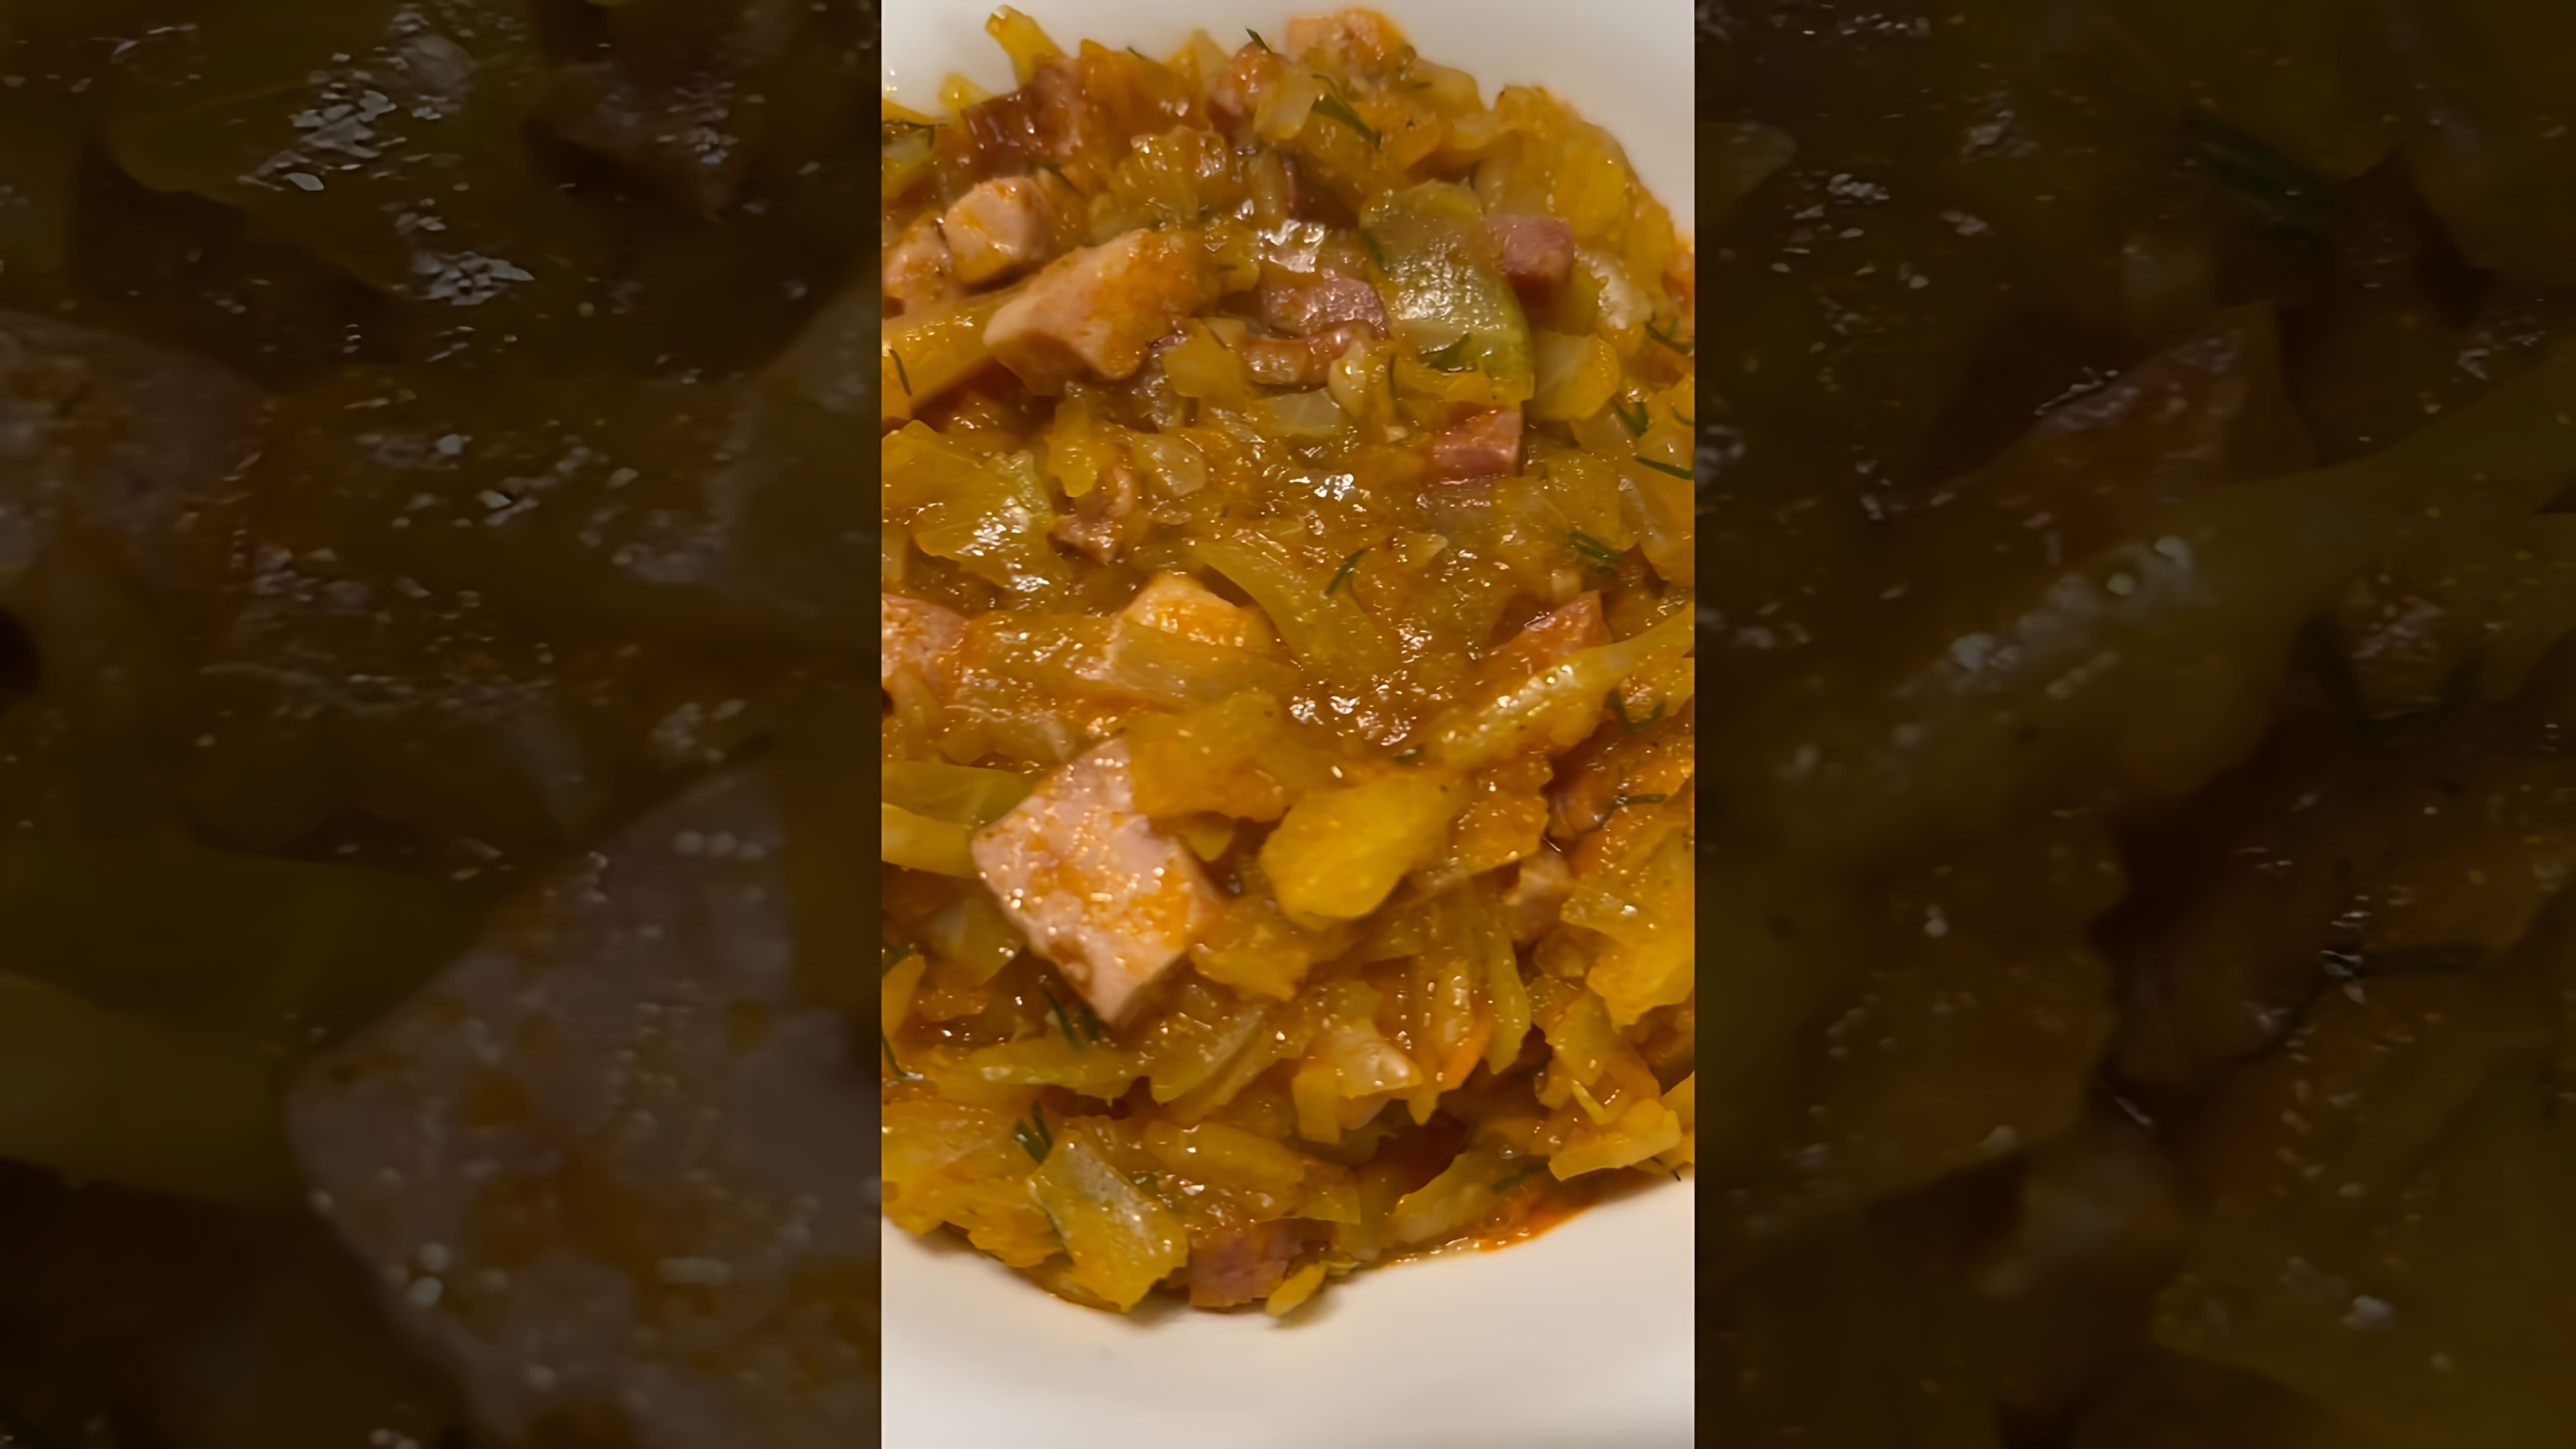 В этом видео демонстрируется процесс приготовления солянки из свежей капусты